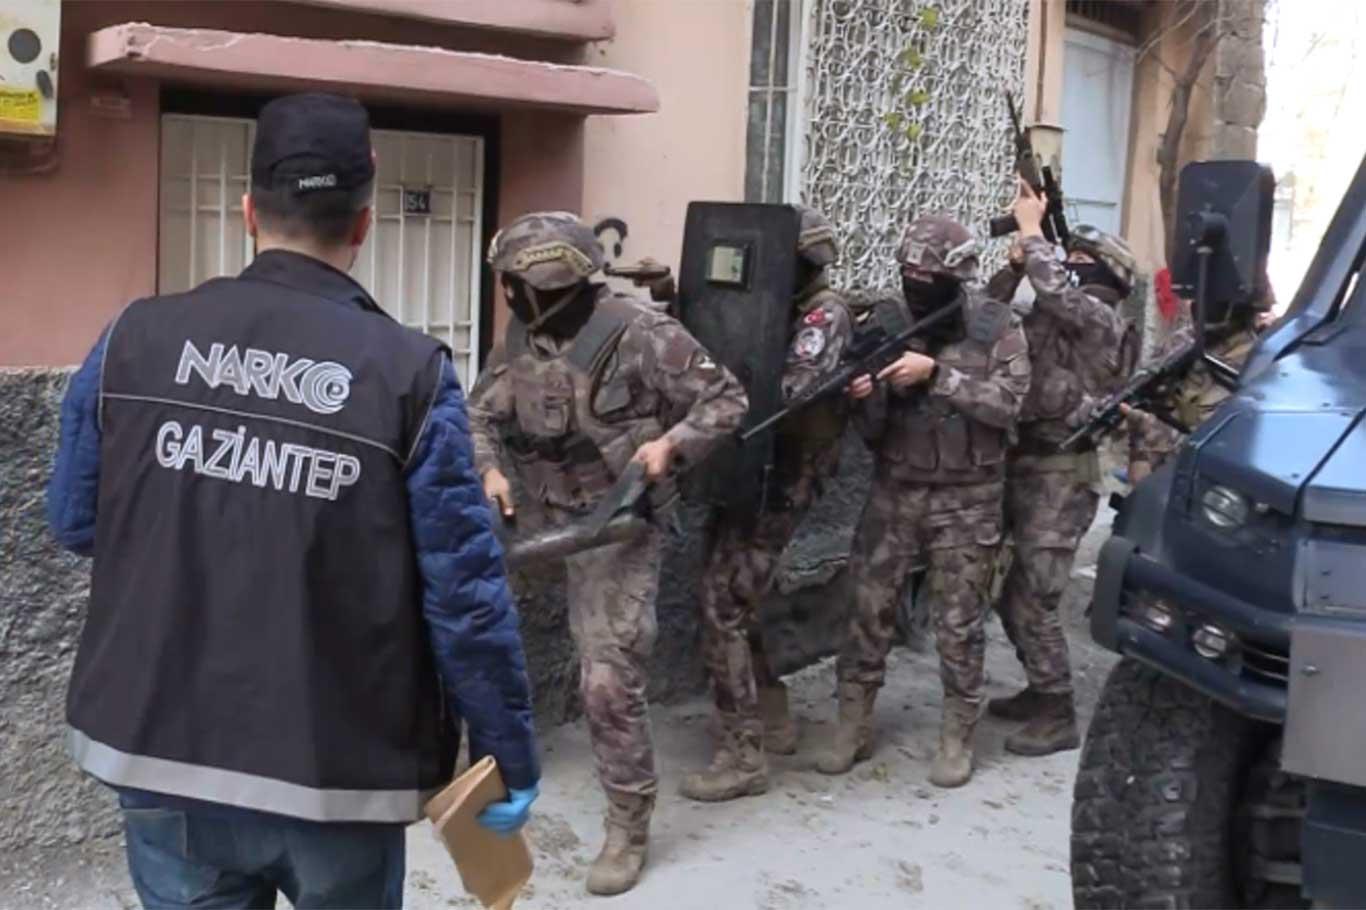 Gaziantep'te uyuşturucu satıcılarına operasyon: 20 gözaltı